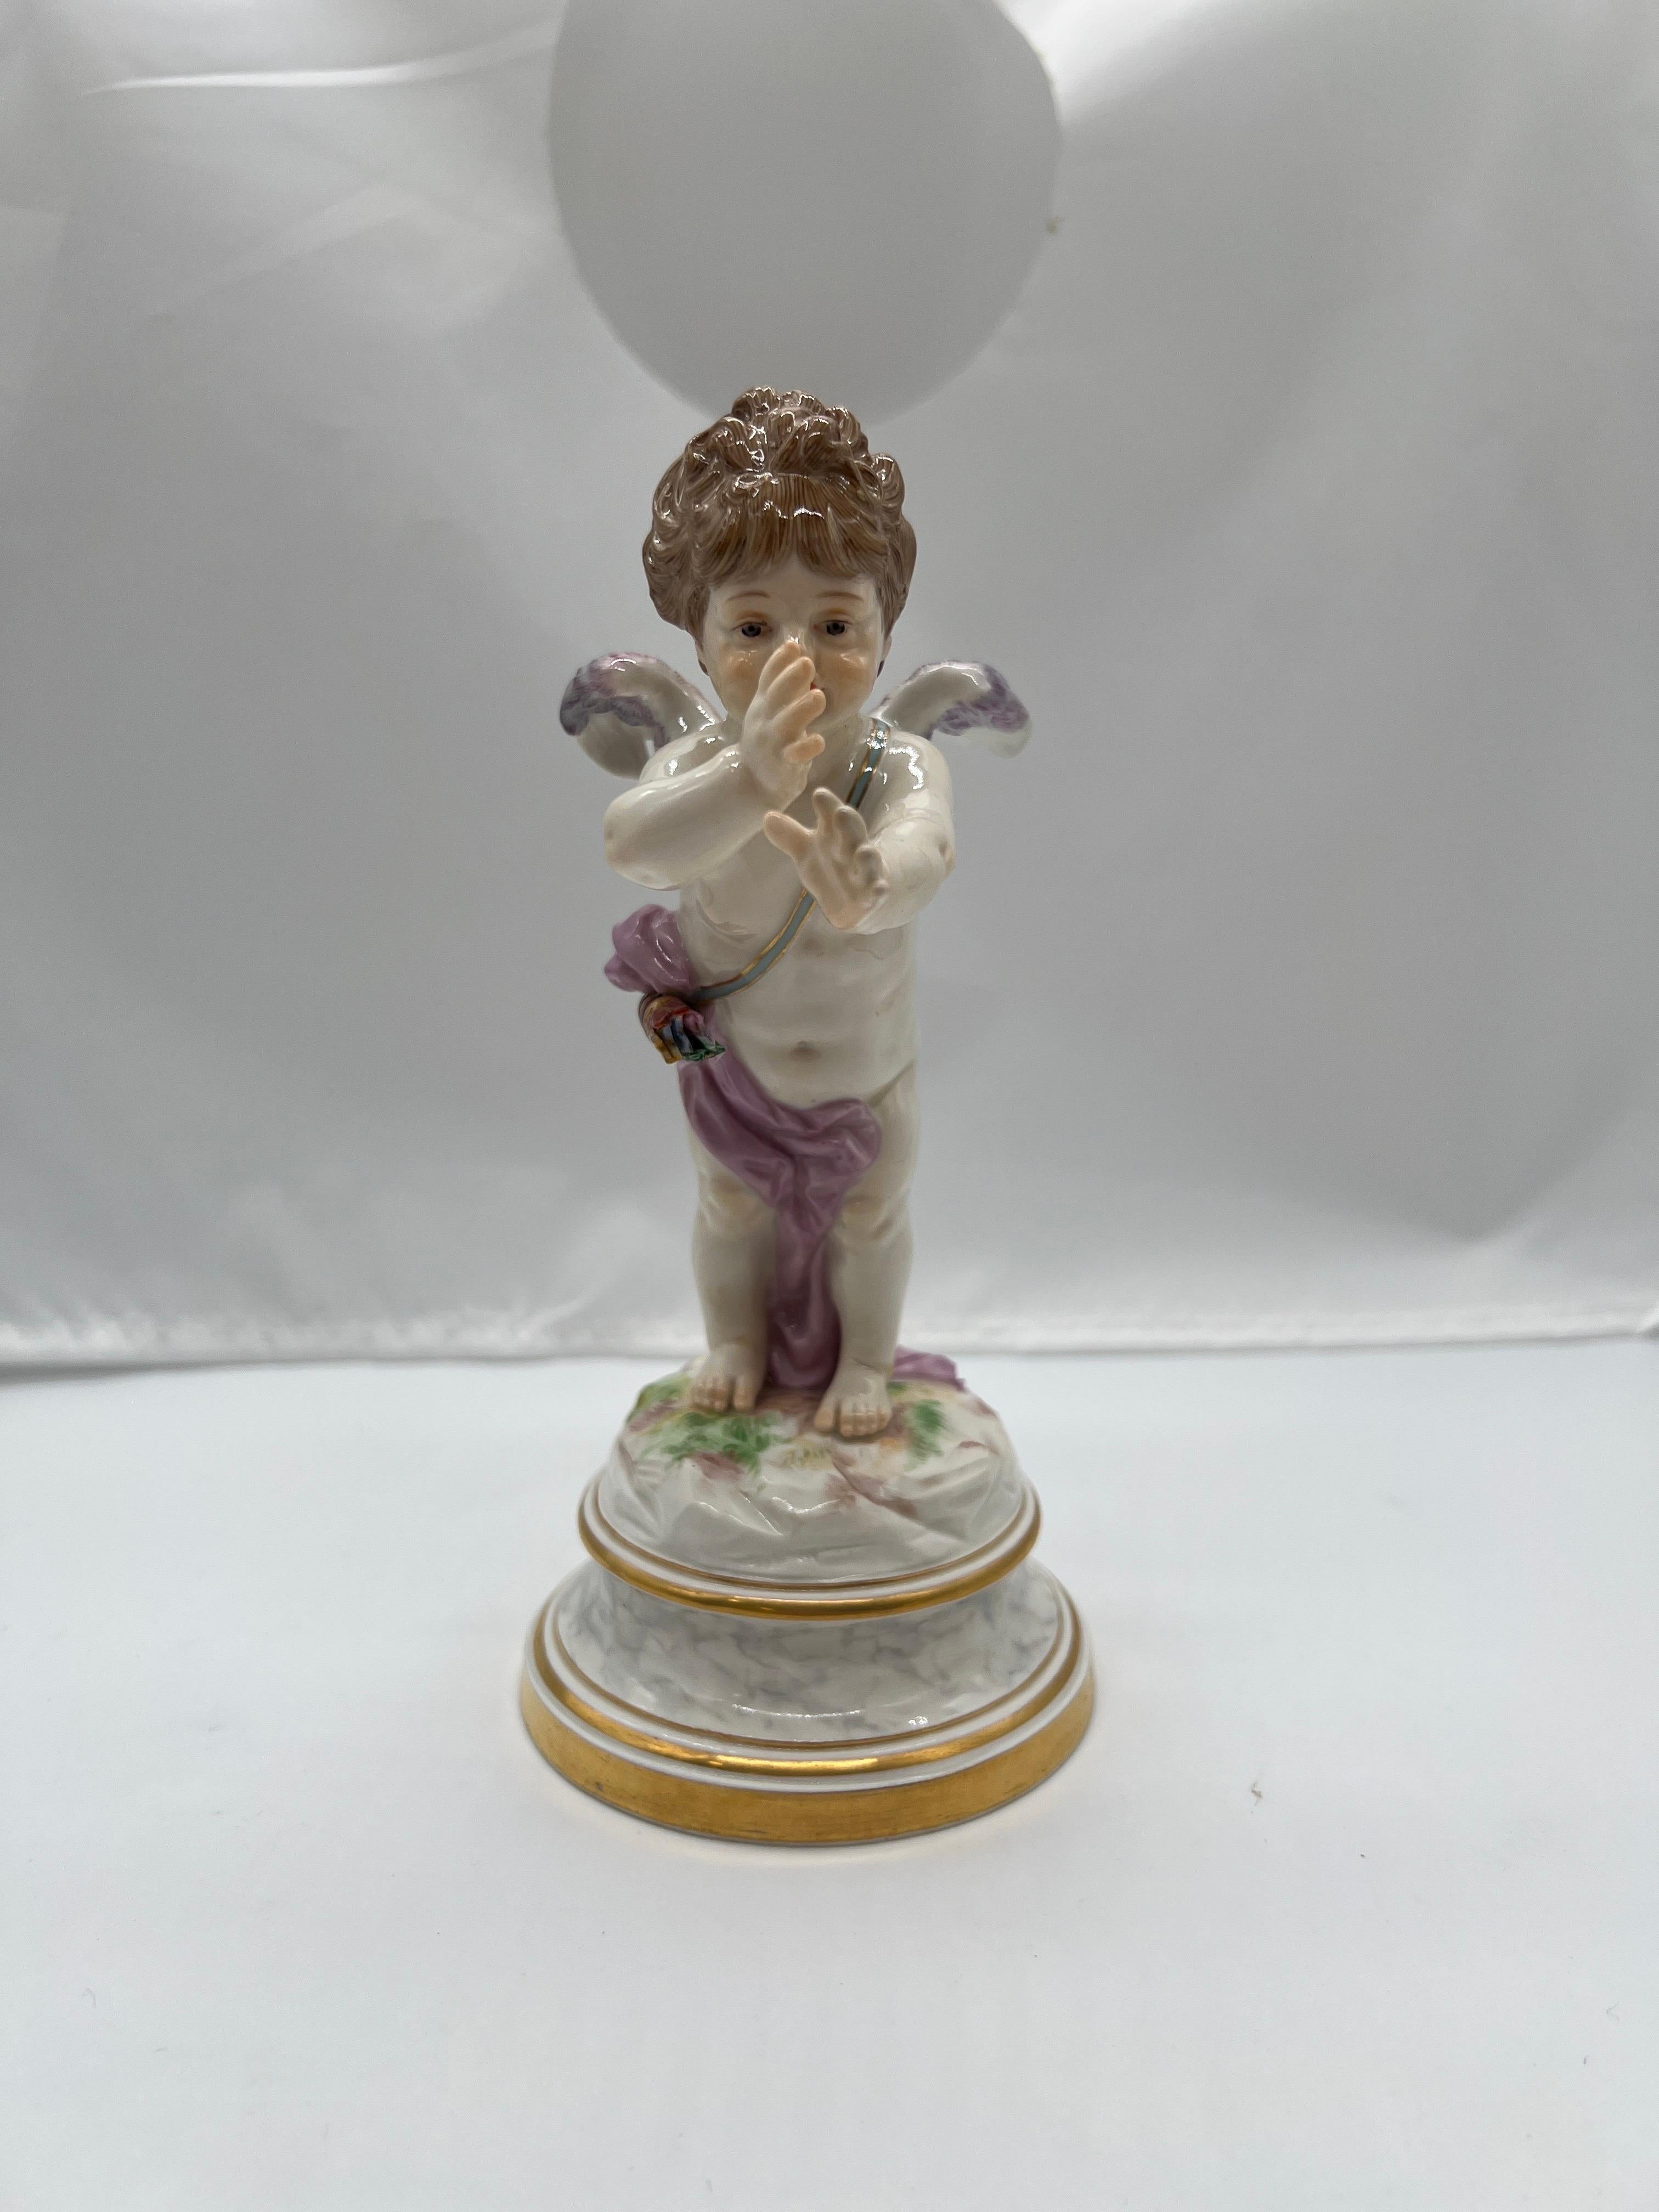 Meissen, 19e siècle.

Figurine en porcelaine de Meissen de qualité supérieure représentant un cupidon drapé dans un tissu violet, doté de petites ailes et de traits très réalistes. Cette pièce a été conçue par le célèbre artiste de Meissen Heinrich